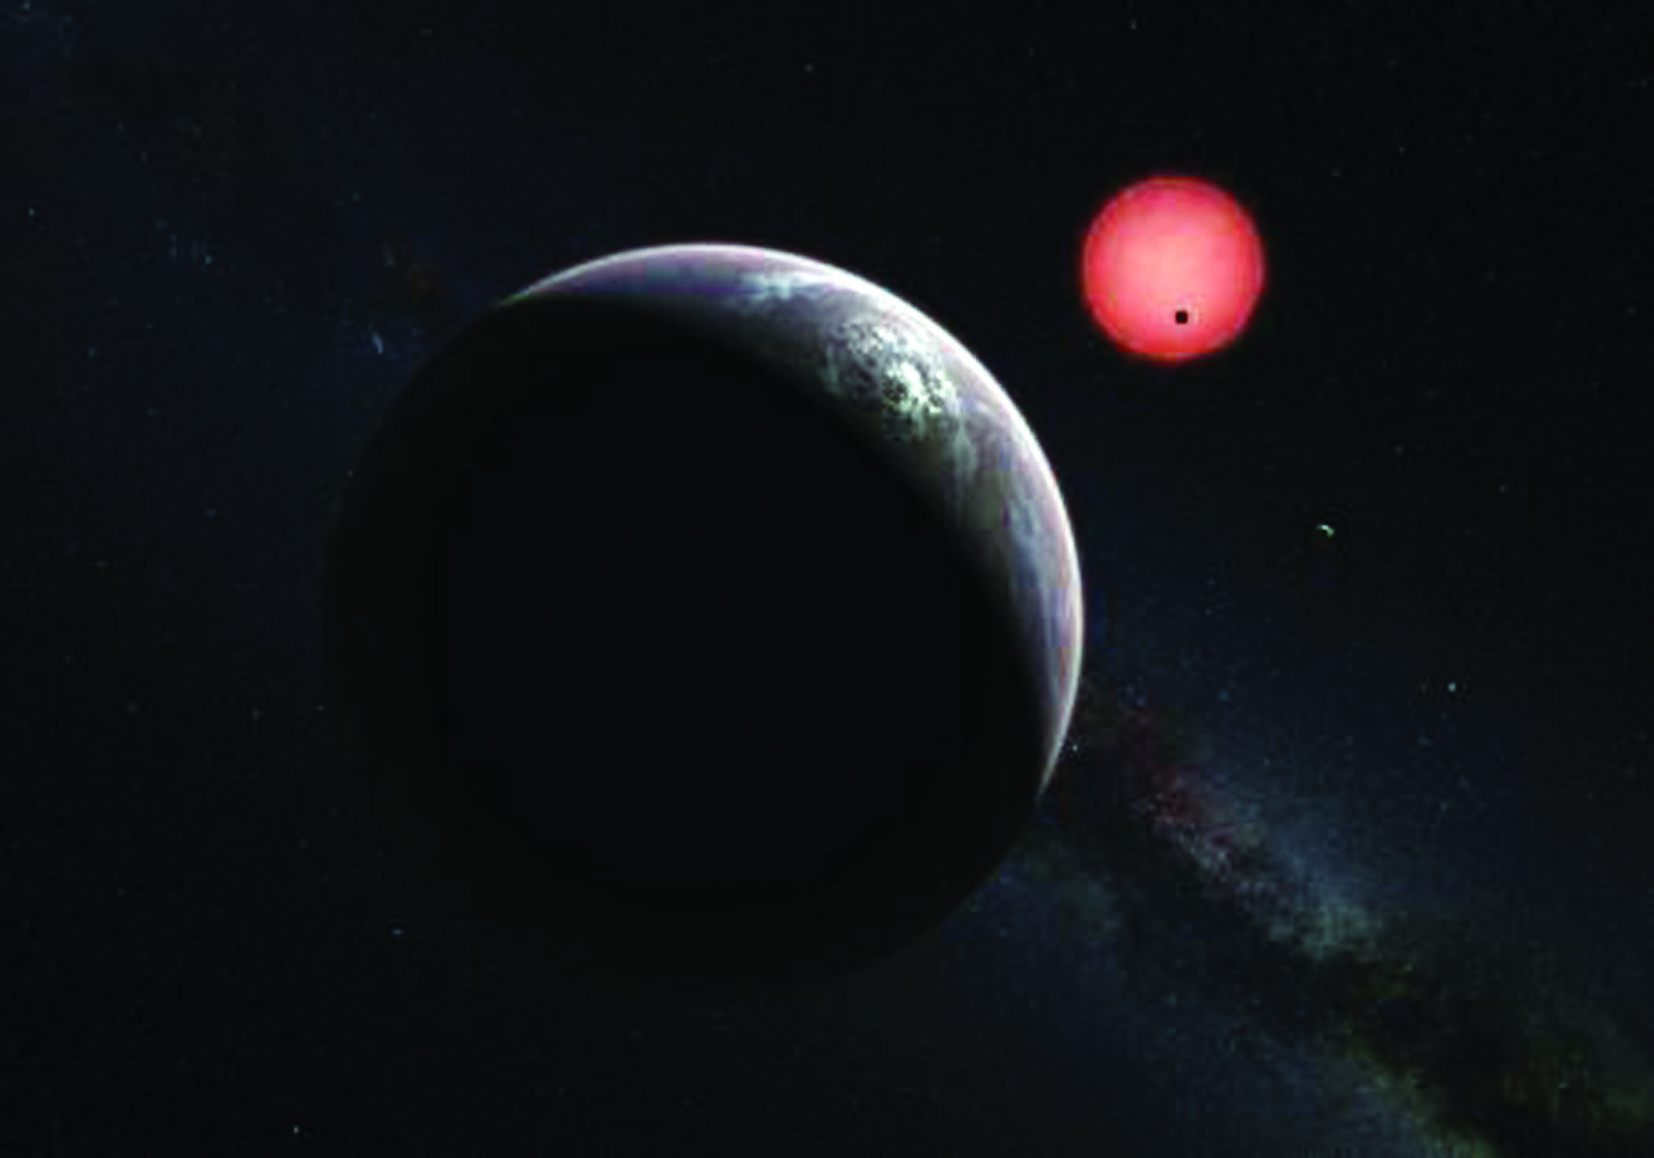 الكواكب المكتشفة حديثا تعزز فرص البحث عن الحياة